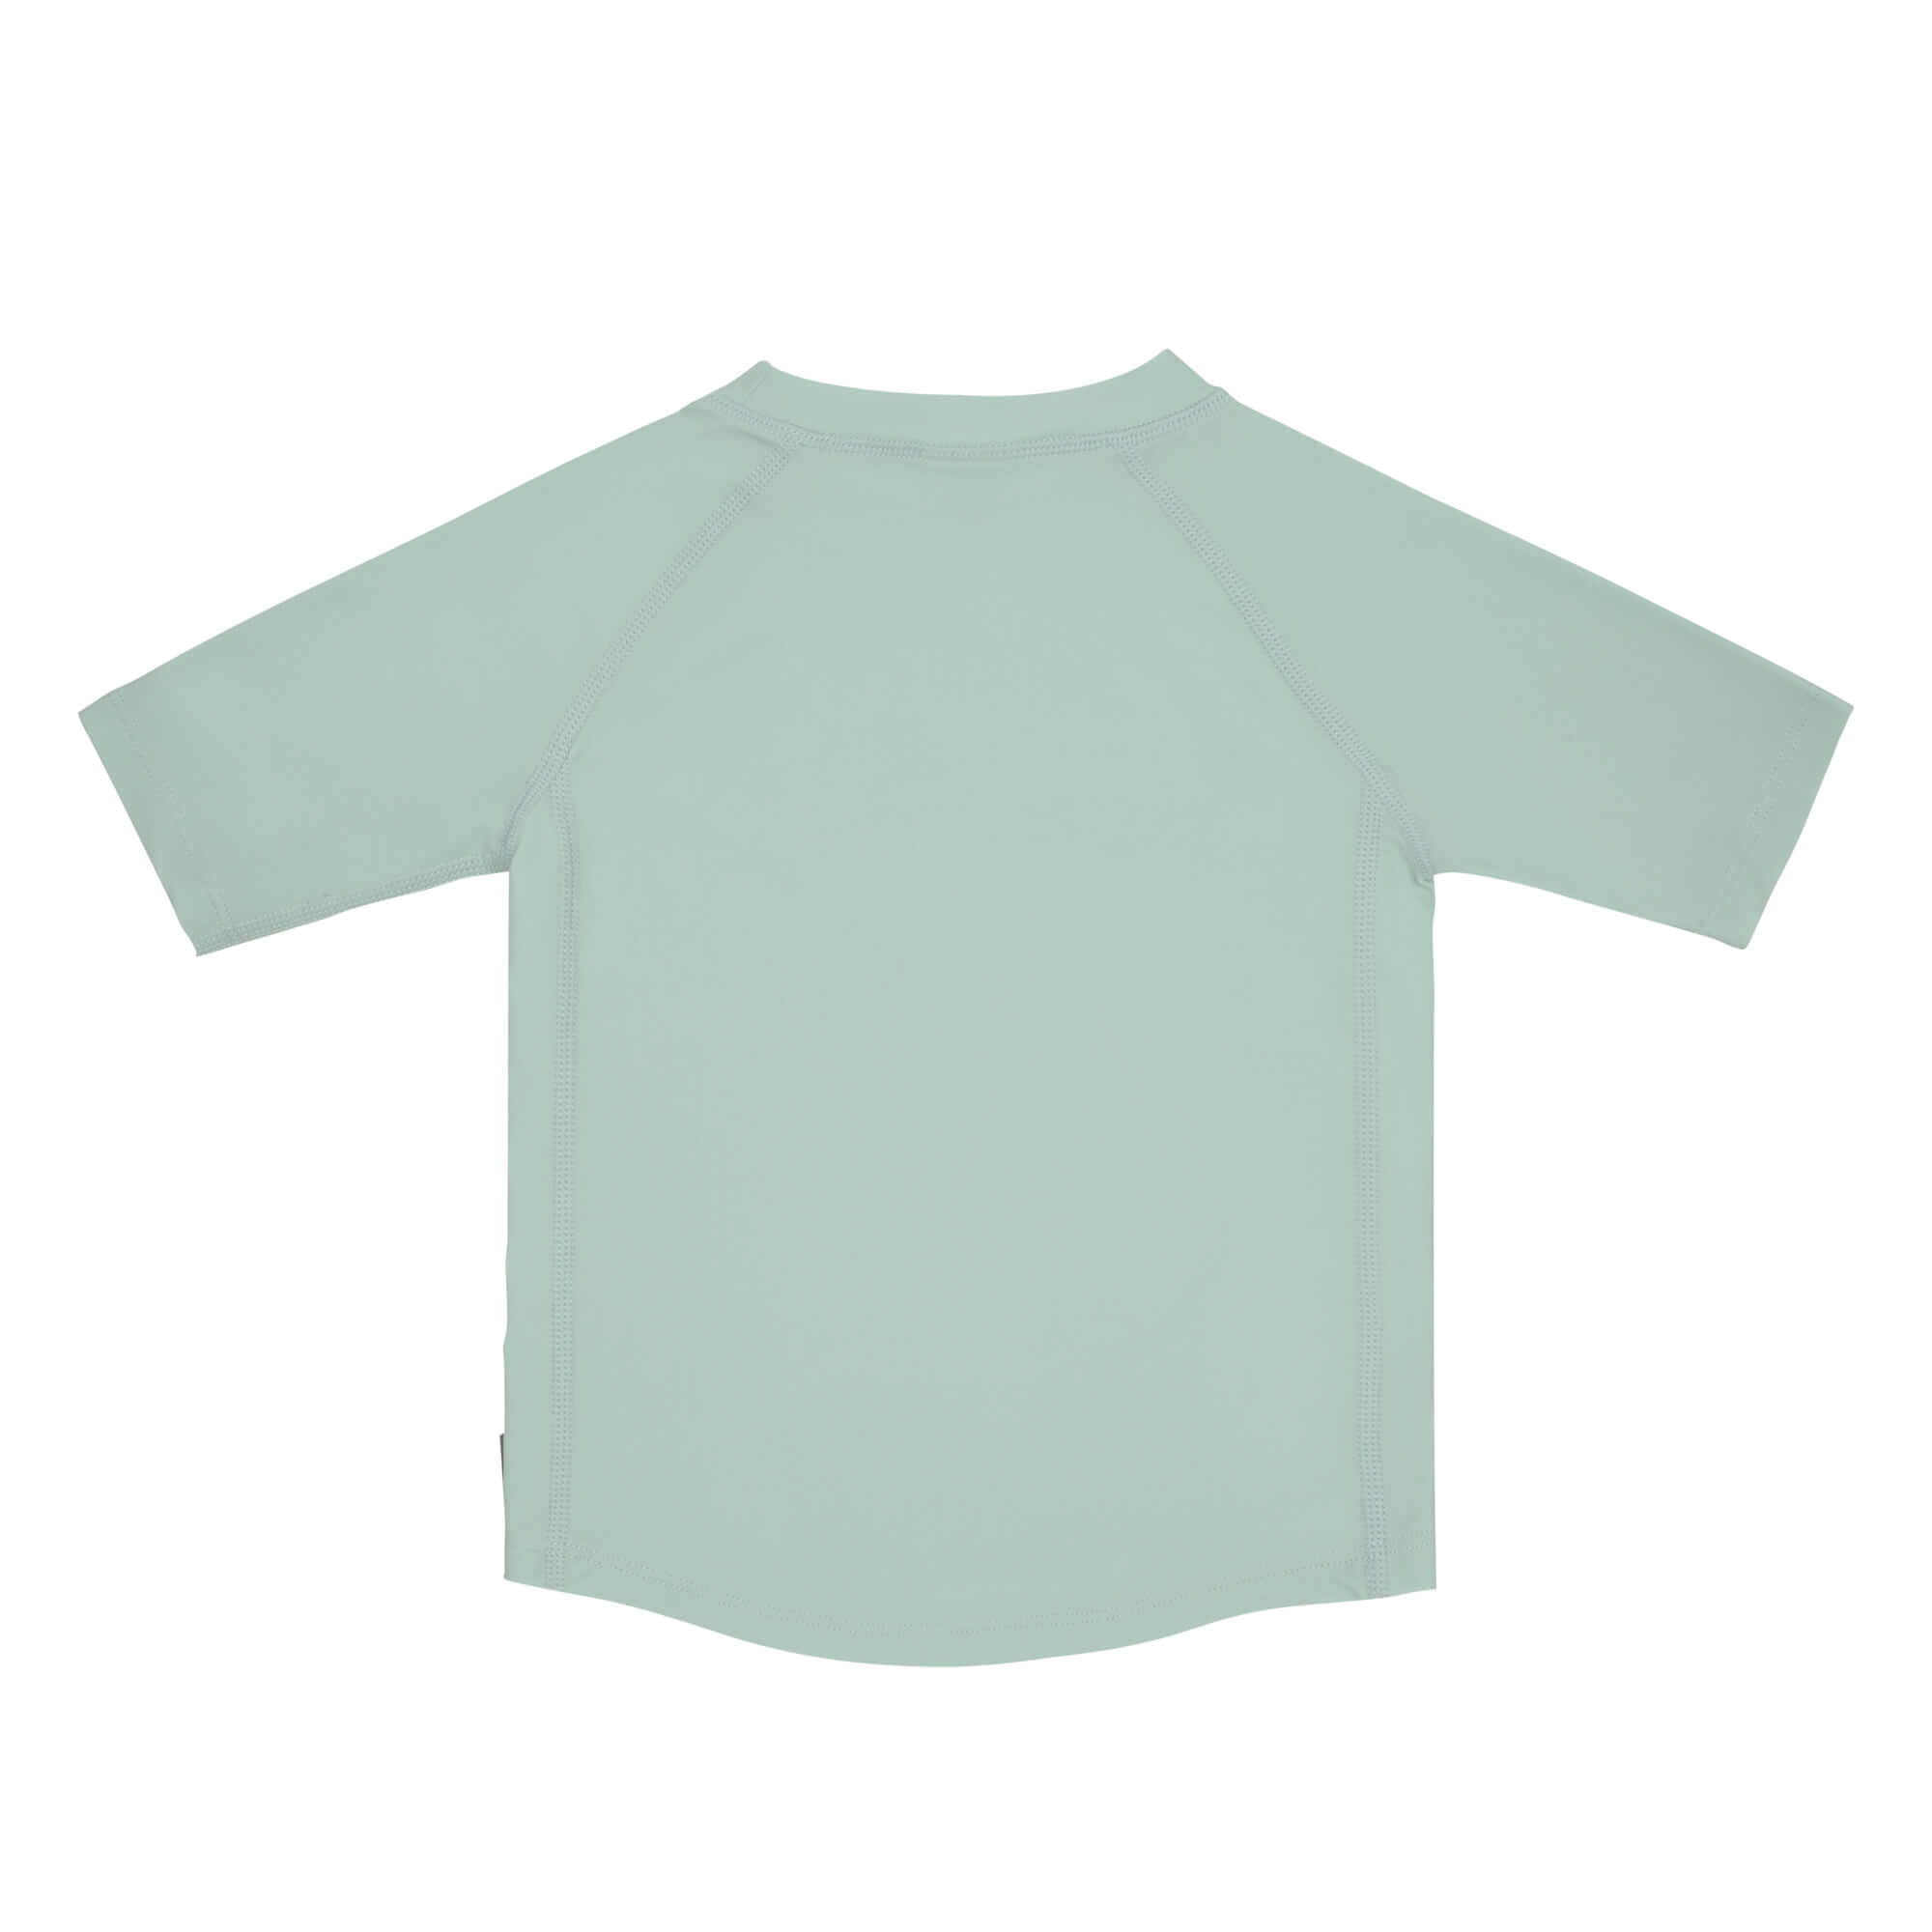 LÄSSIG Lässig UV Protection Shirt Kids - Short Sleeve